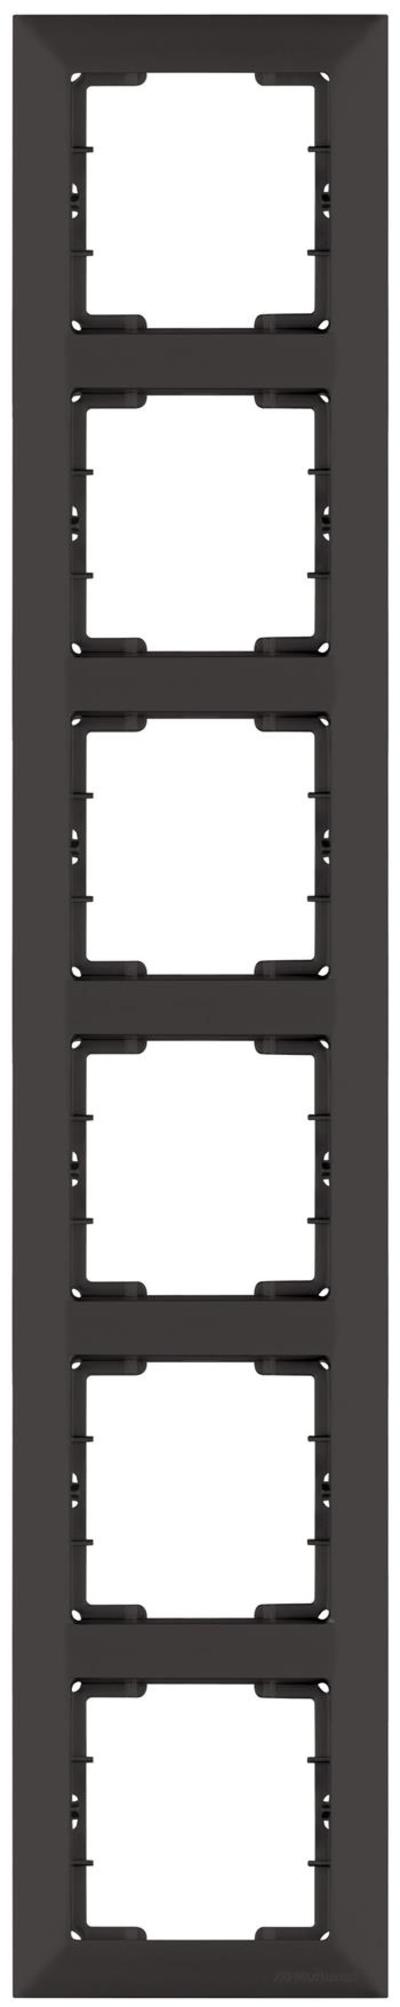 6fach Rahmen vertikal Schwarz (DARIA Metall Optik)